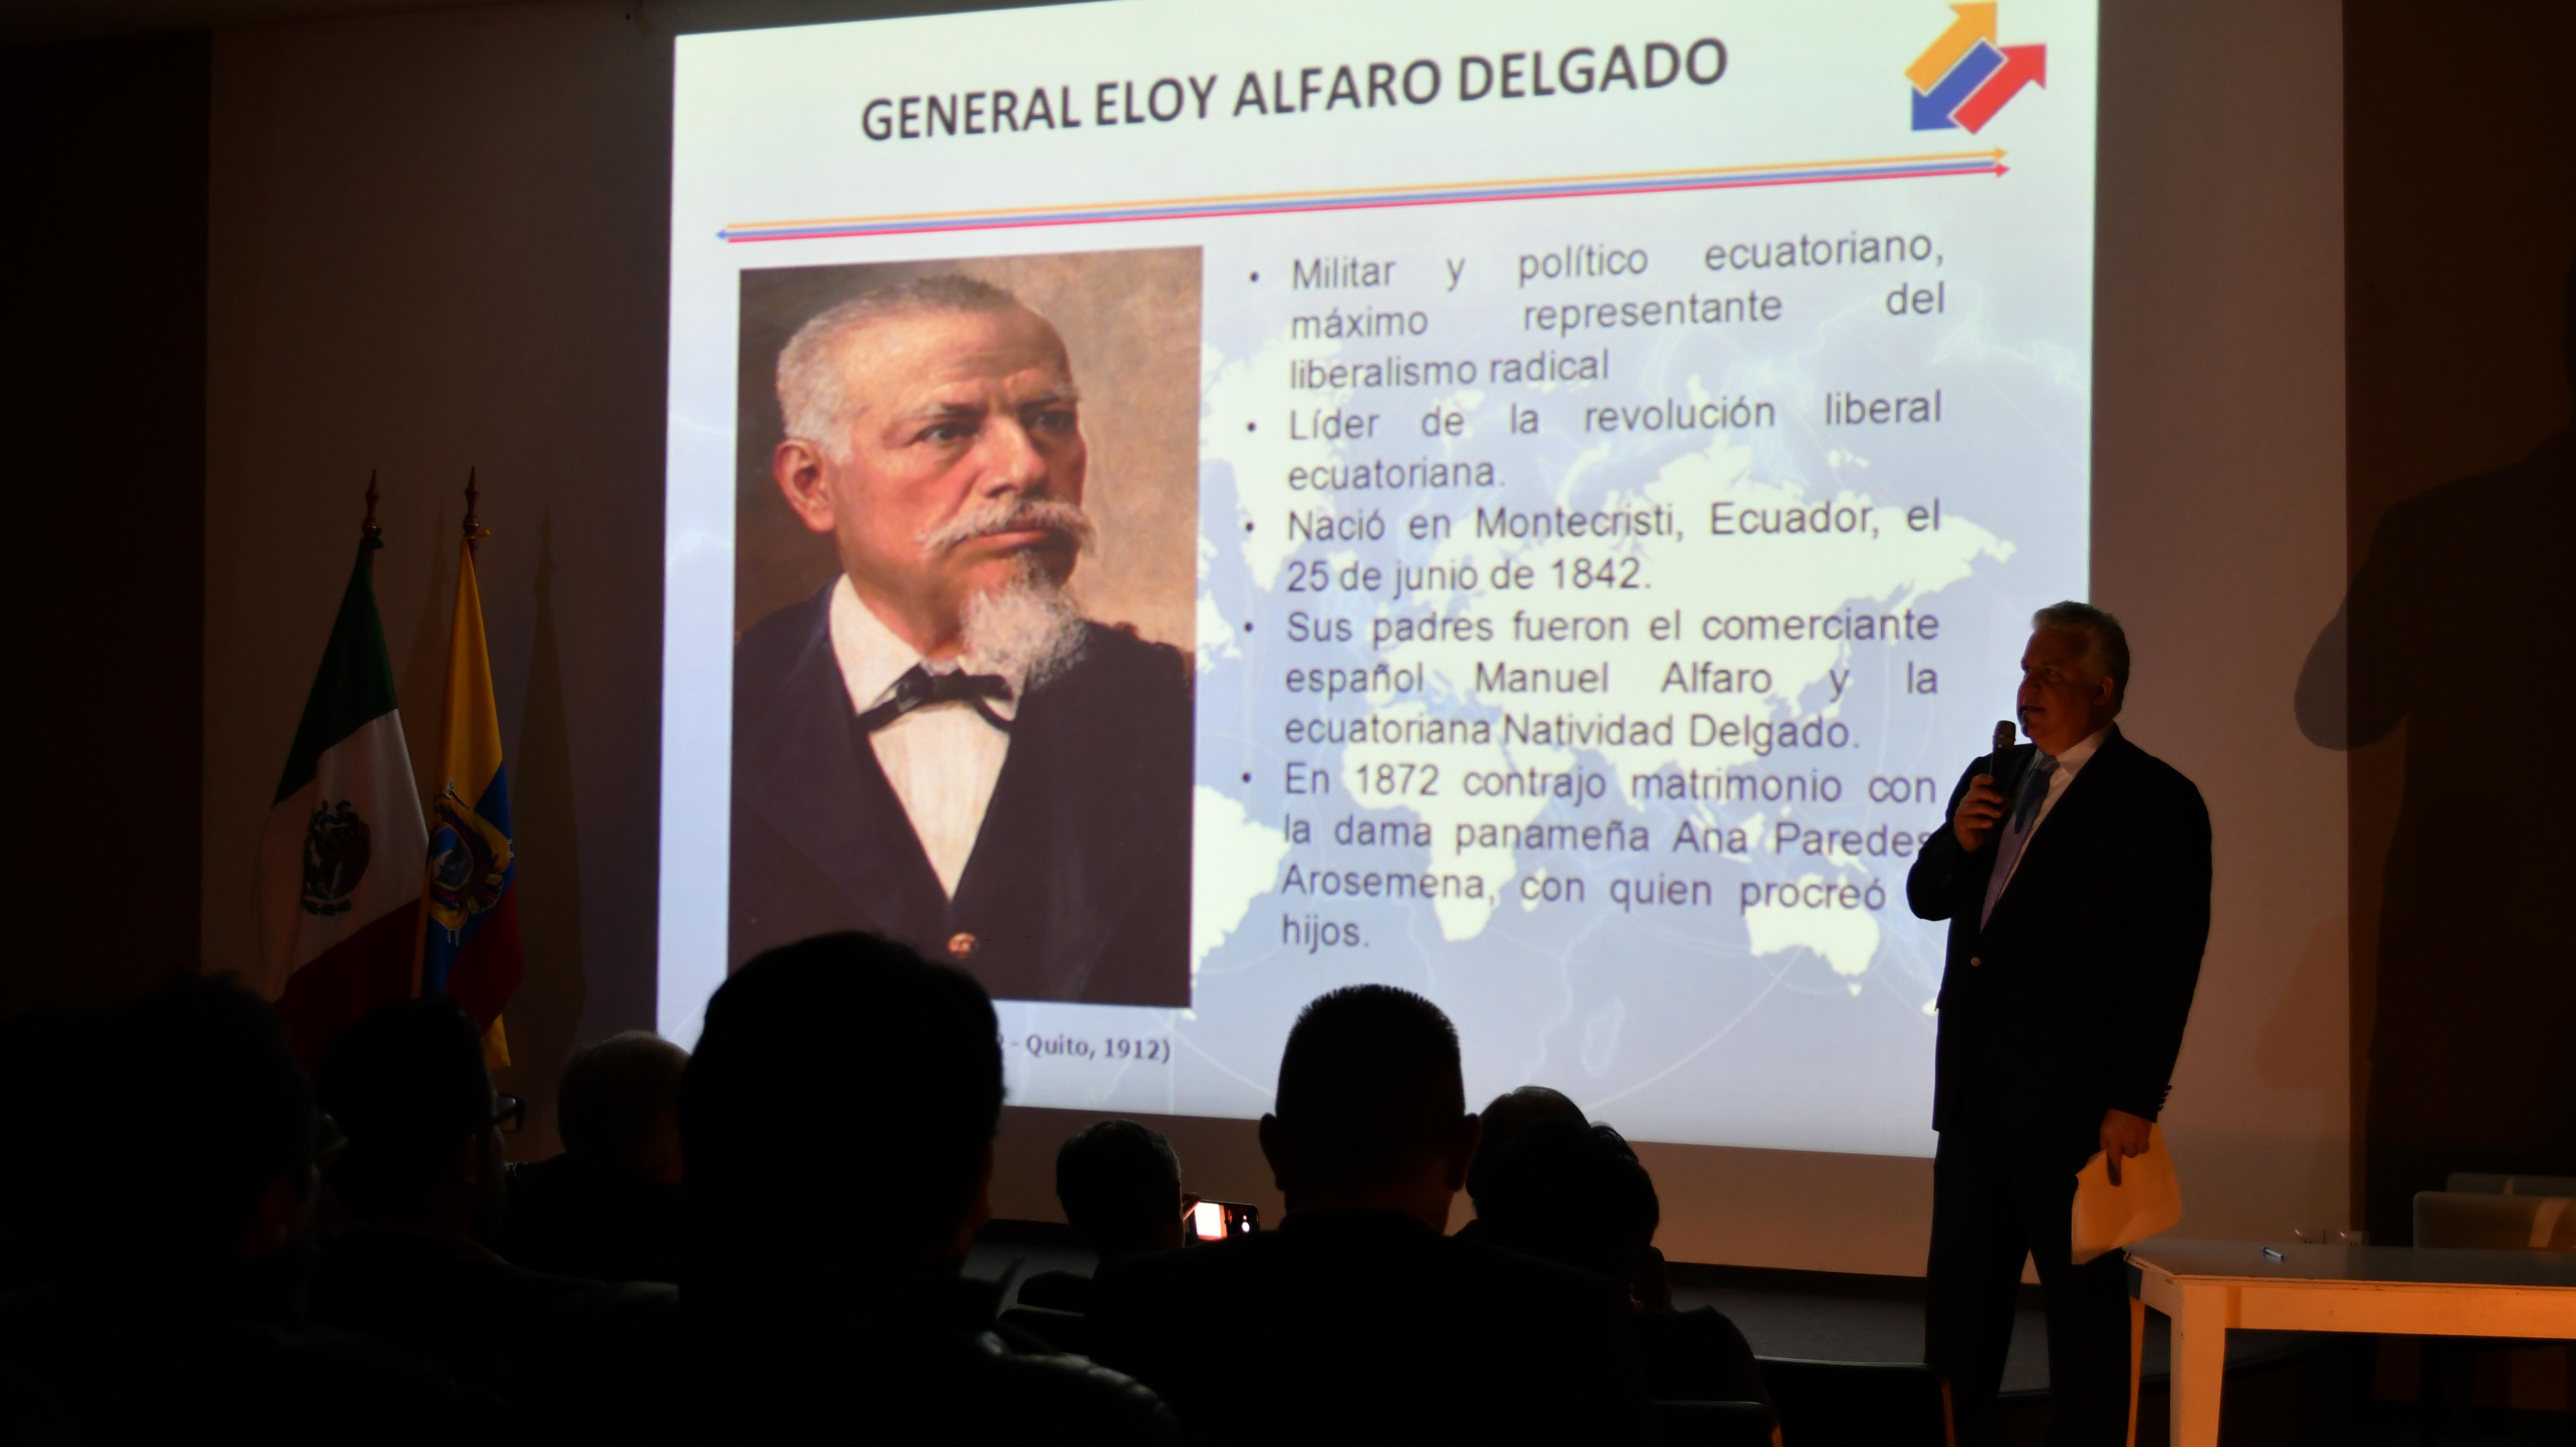 LA OBRA DE ELOY ALFARO EN ECUADOR, SIMILAR A LA DE BENITO JUÁREZ